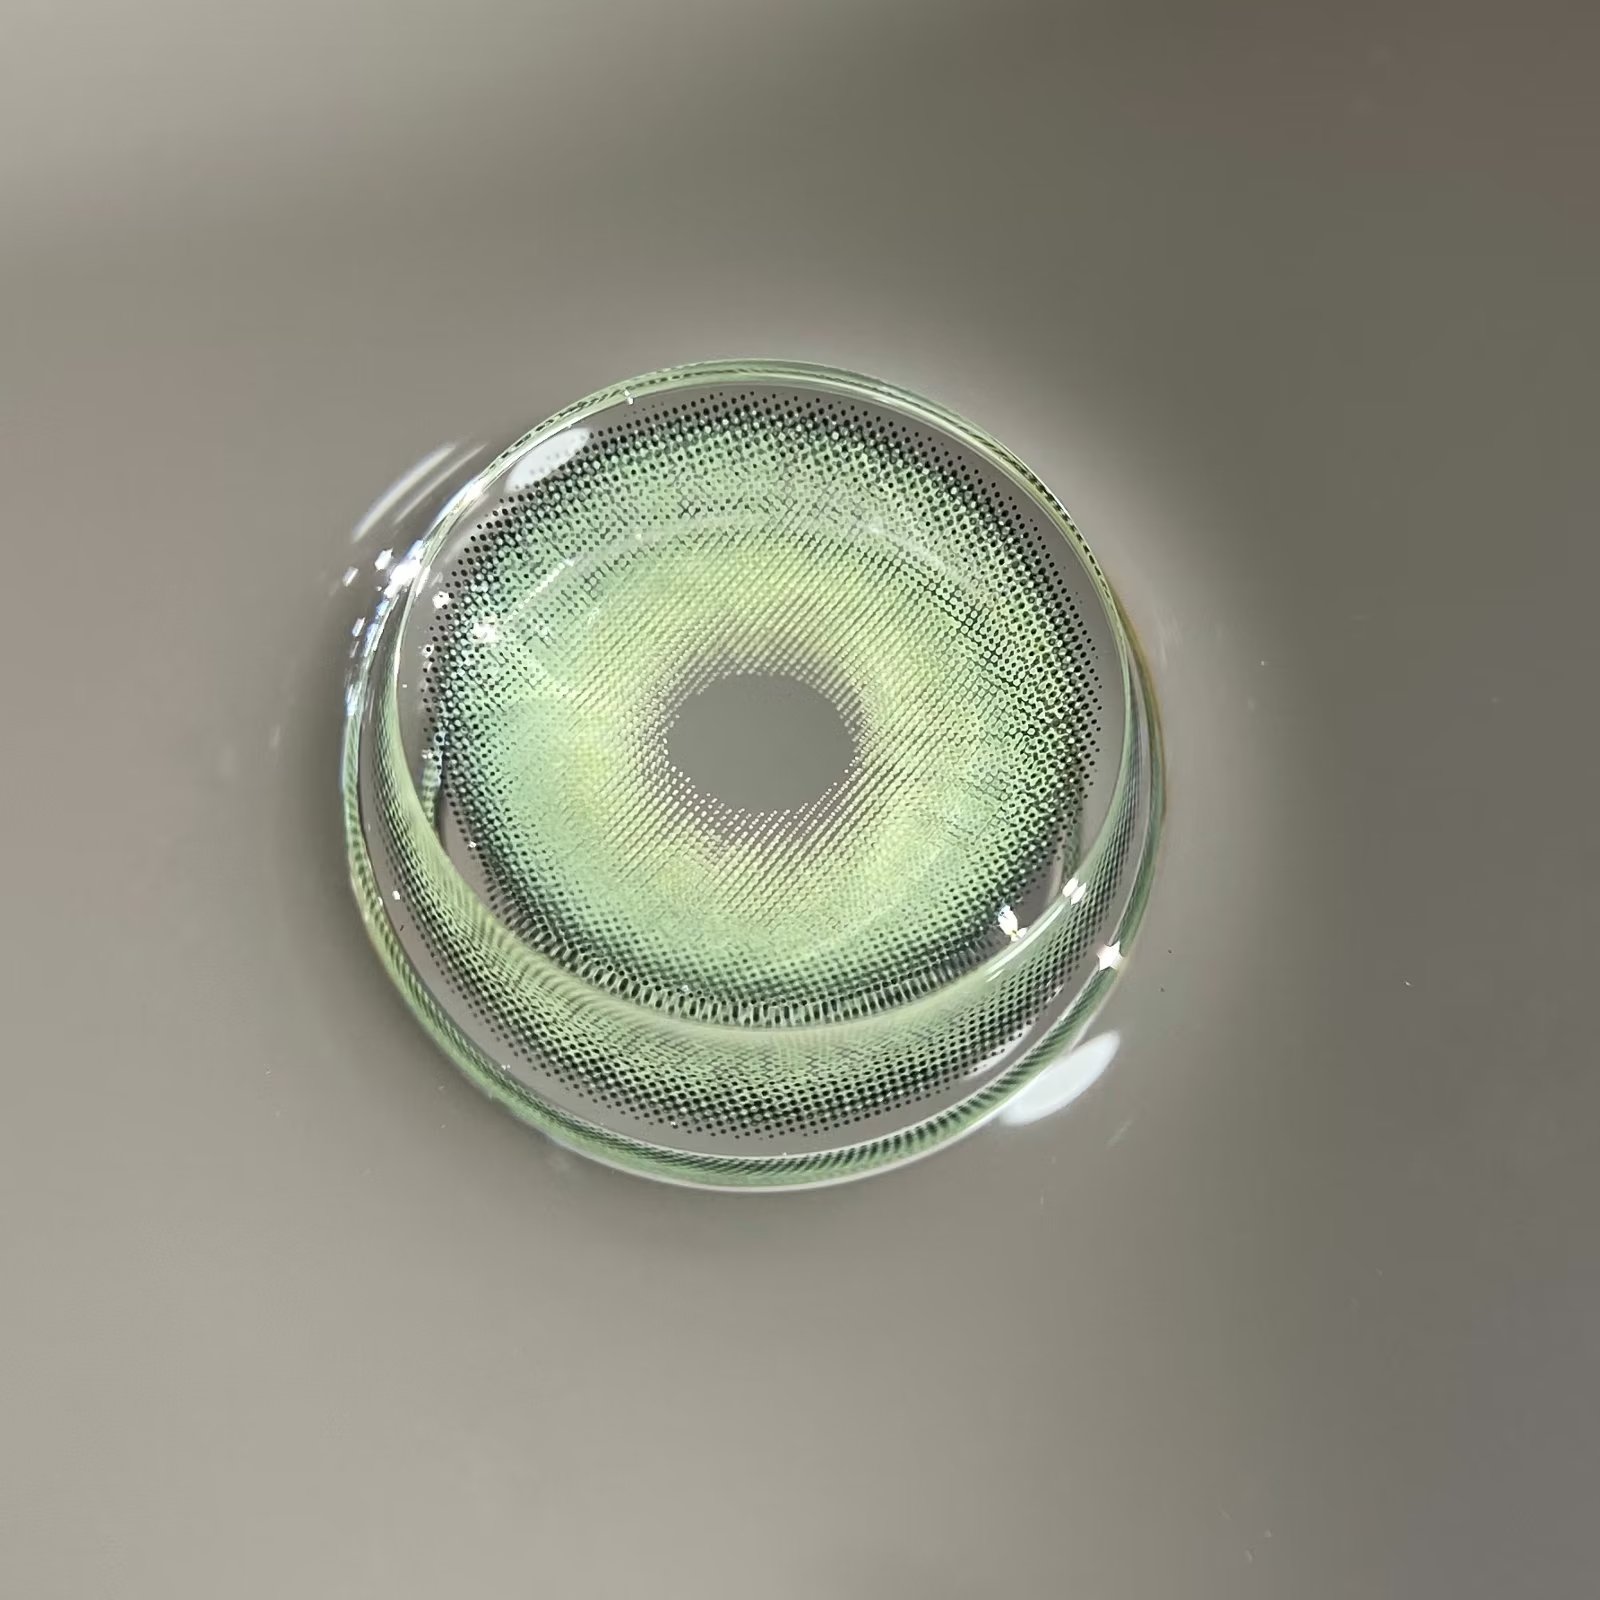 ALLECON 年抛隐形眼镜 橘绿之泉 14.0mm 1副/2片 左右度数可不同 - VVCON美瞳网